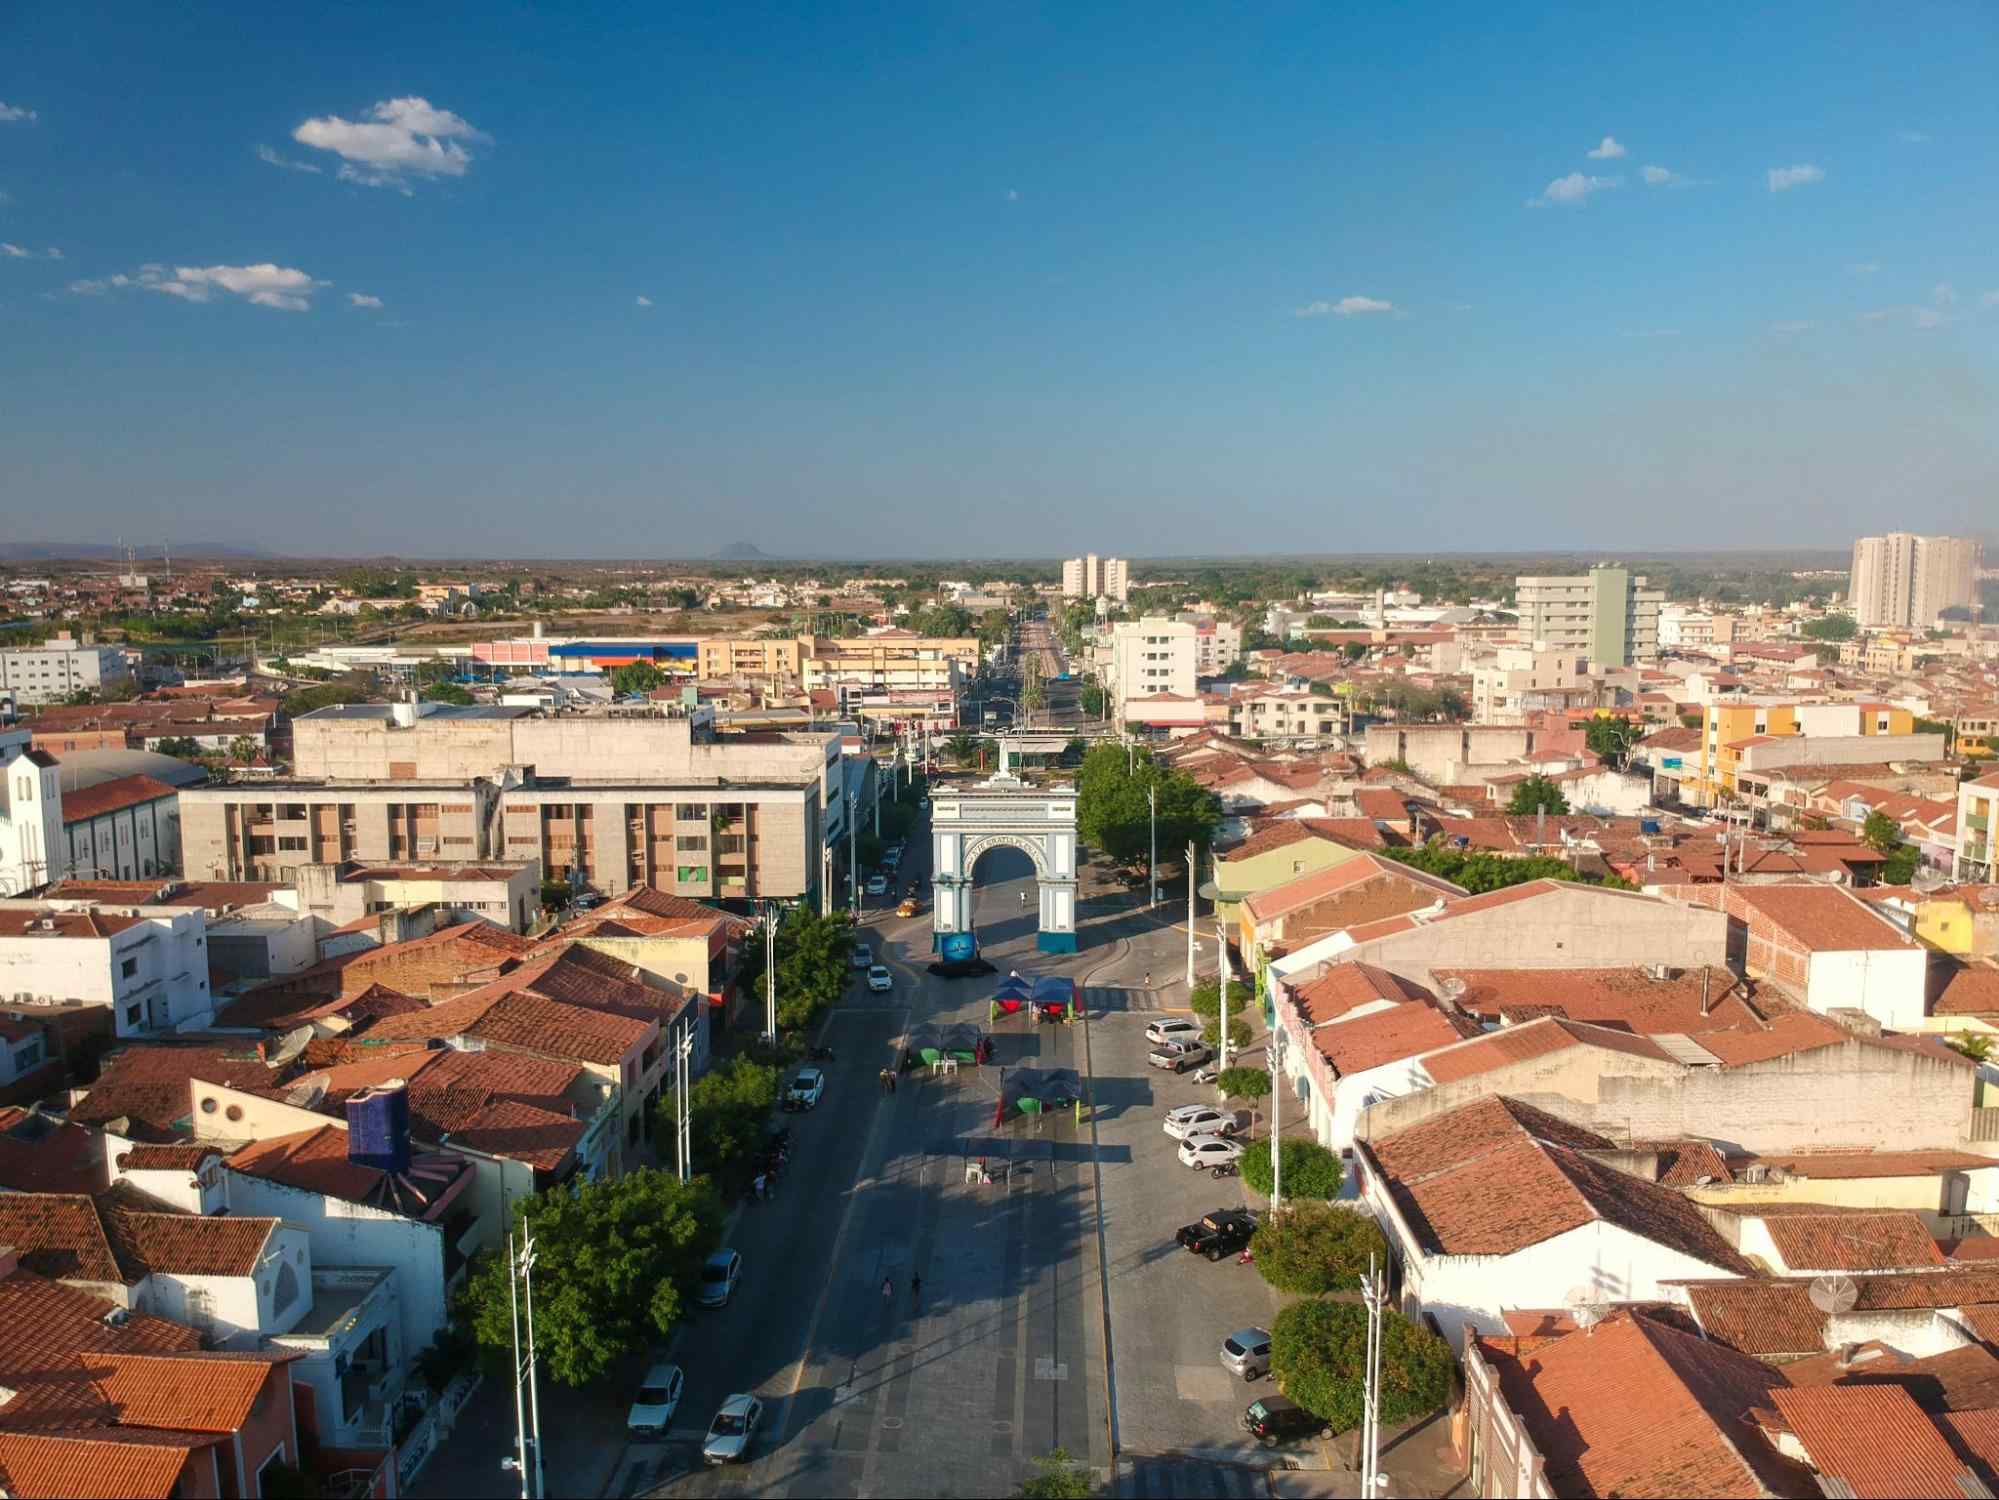 Imagem aérea de Sobral, Ceará. No centro da foto está uma grande avenida que atravessa um monumento azul e branco em forma de arco. Dos dois lados da via, há muitas construções baixas.